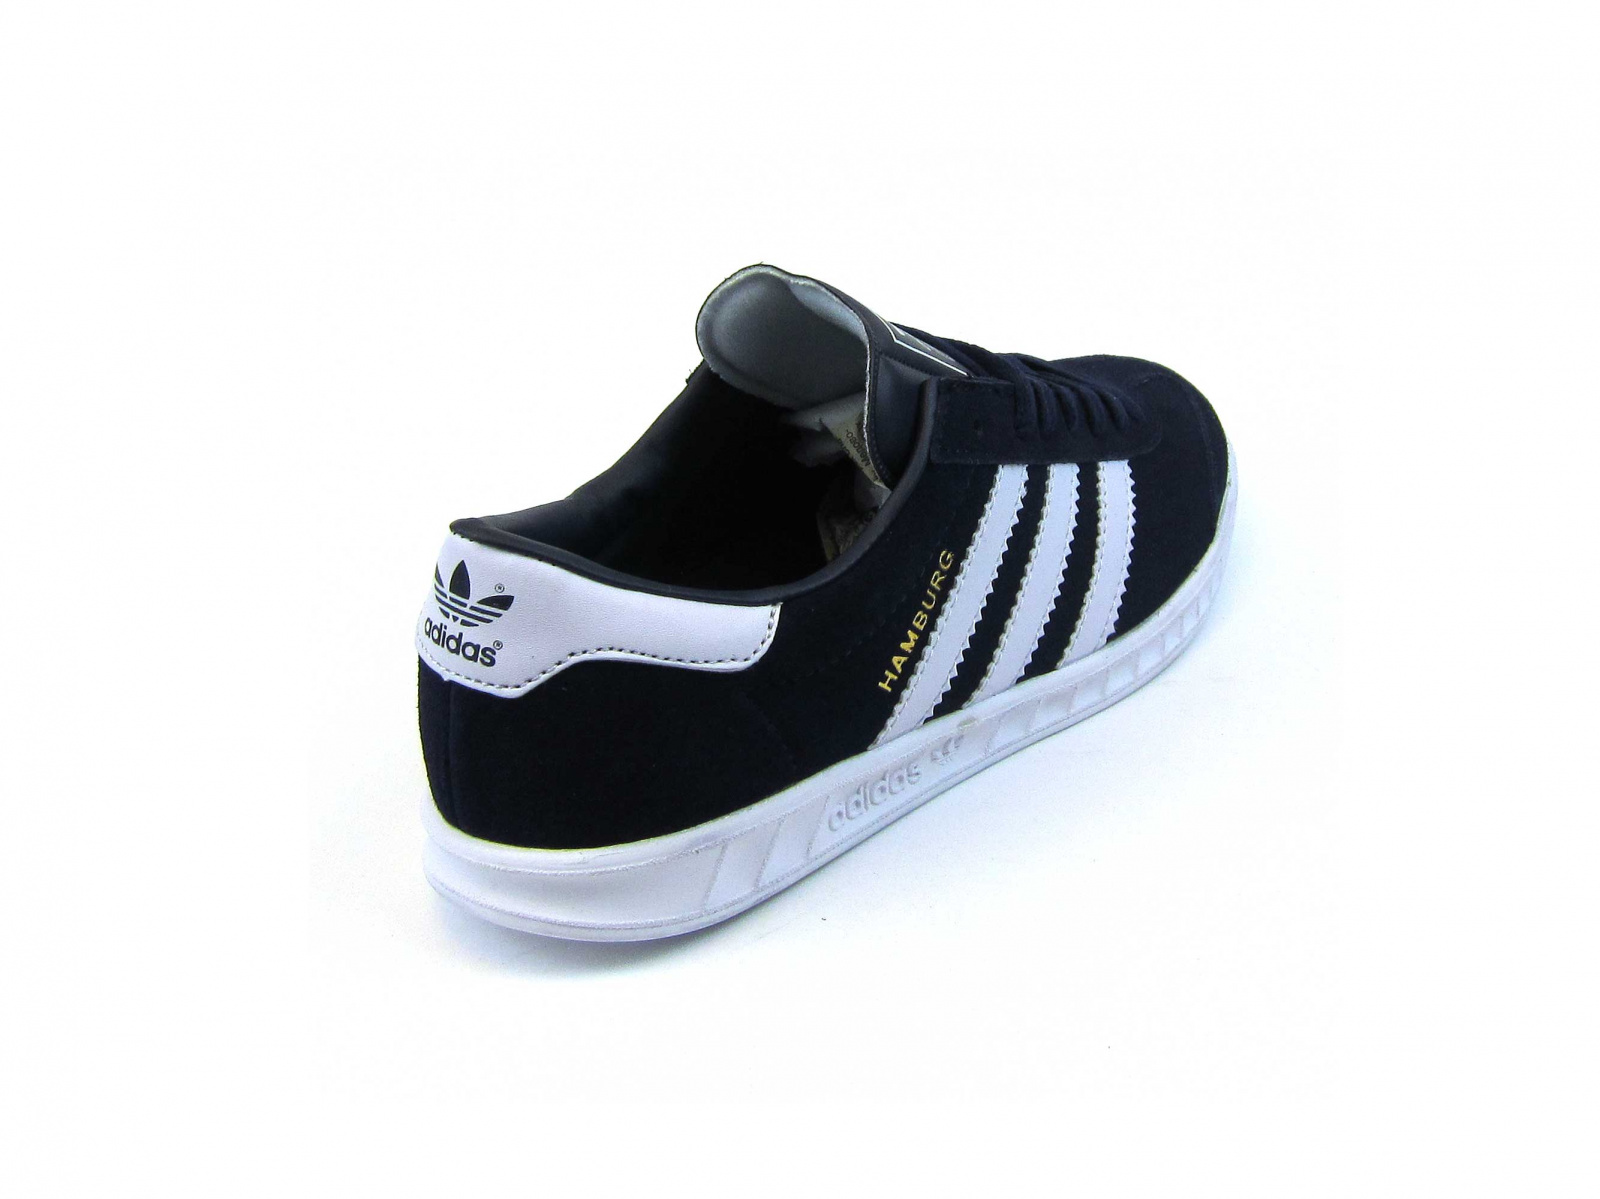  Adidas Hamburg Black/White/White